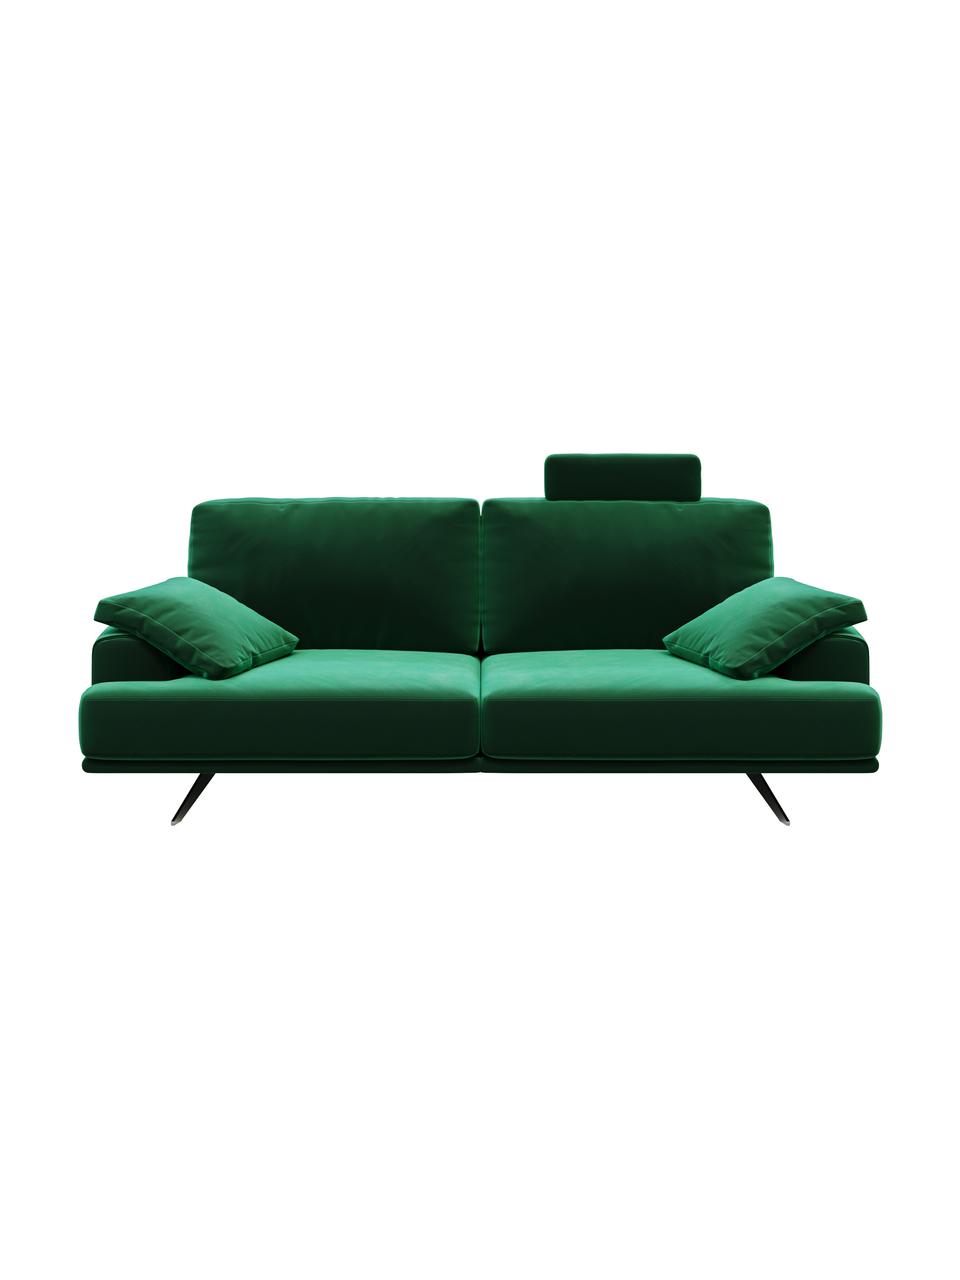 Sofa z aksamitu Prado (2-osobowa), Tapicerka: 100% aksamit poliestrowy,, Nogi: metal lakierowany, Ciemny zielony, S 220 x G 107 cm